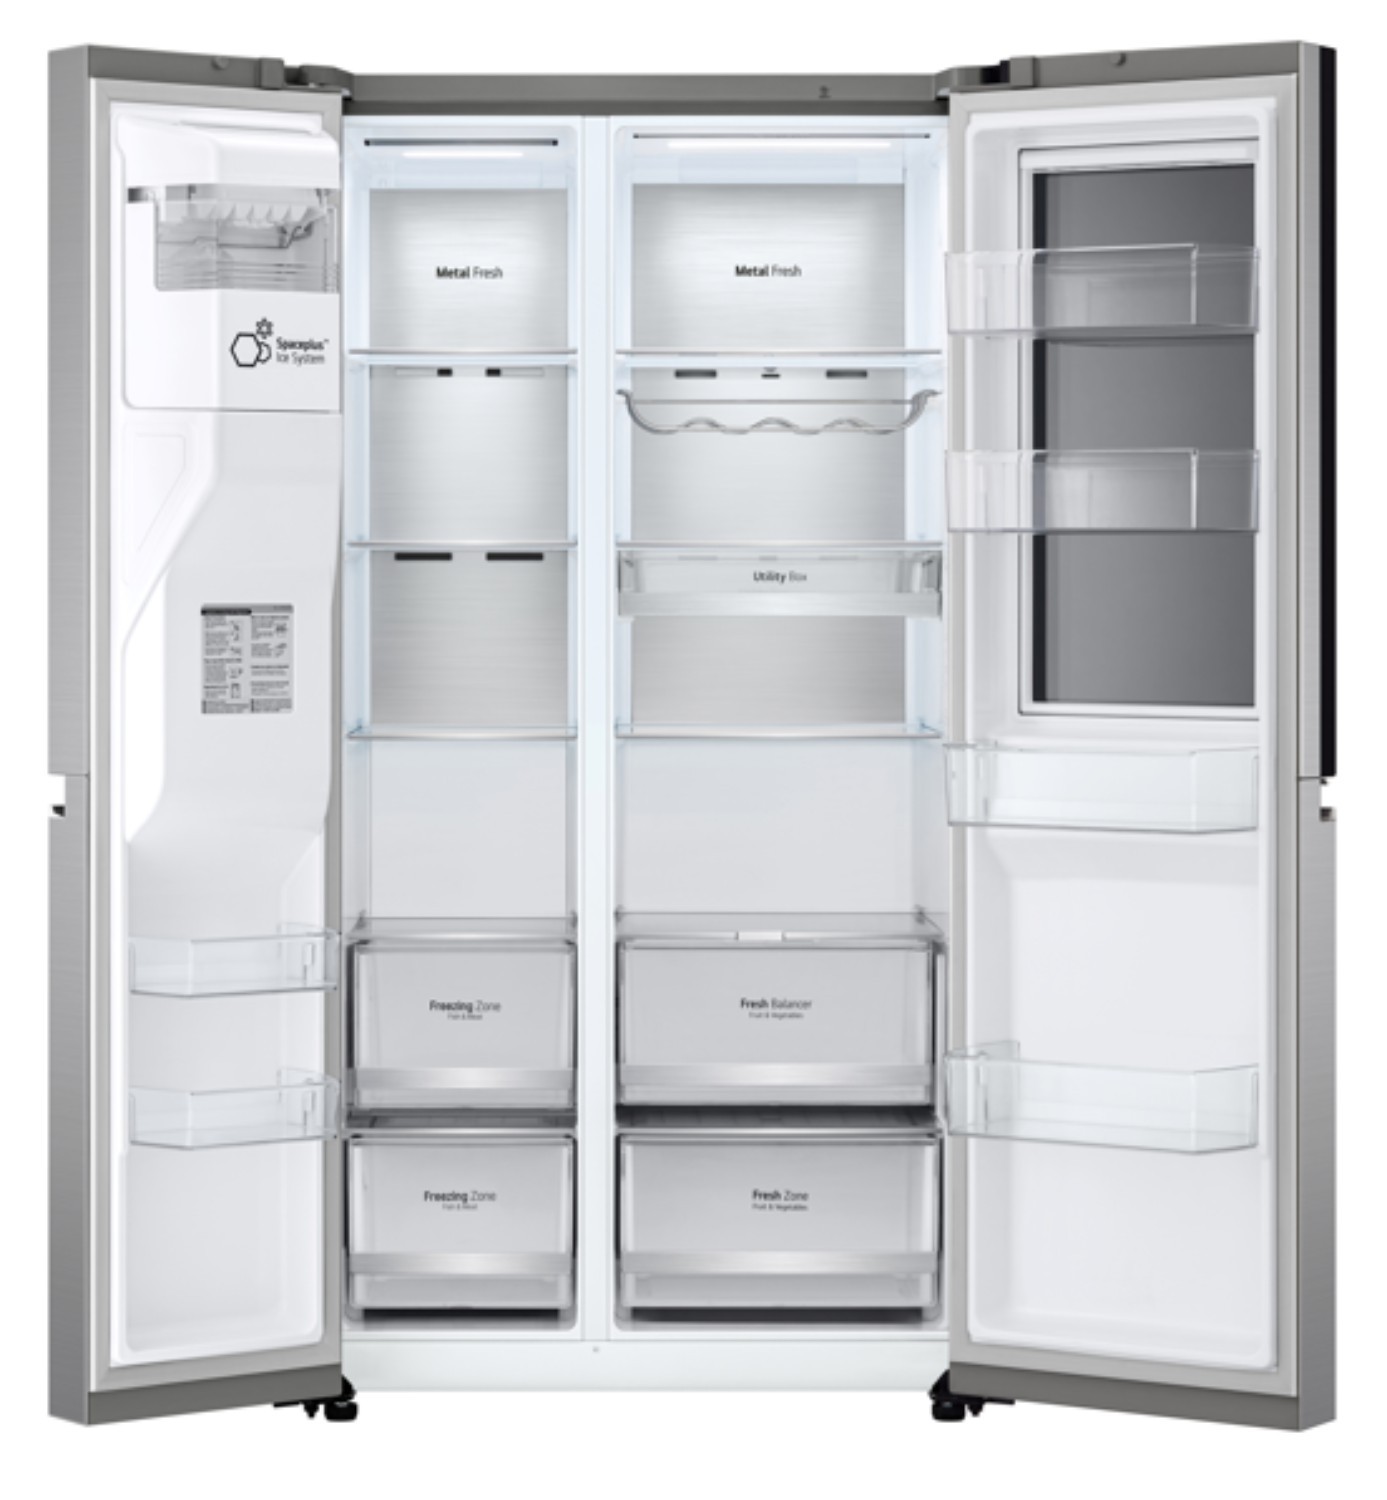 LG Réfrigérateur américain Instaview Door-in-Door 635L